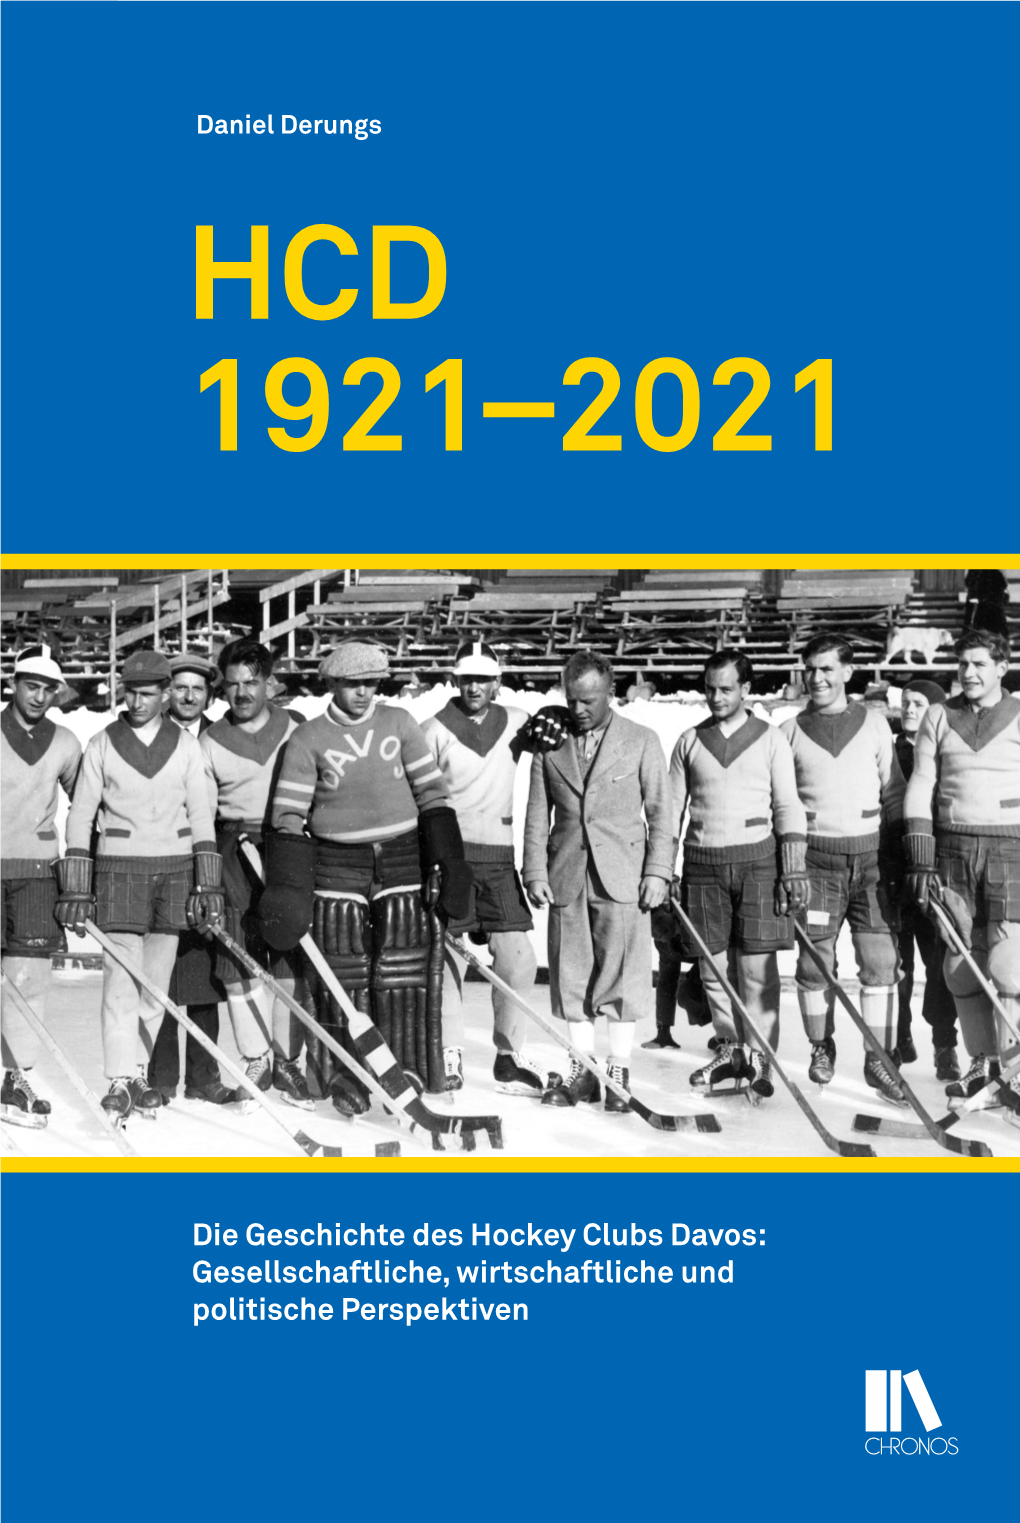 HCD 1921–2021 1921–2021 HCD Politische Perspektiven Gesellschaftliche, Wirtschaftliche Und Die Geschichte Deshockey Clubsdavos: Daniel Derungs